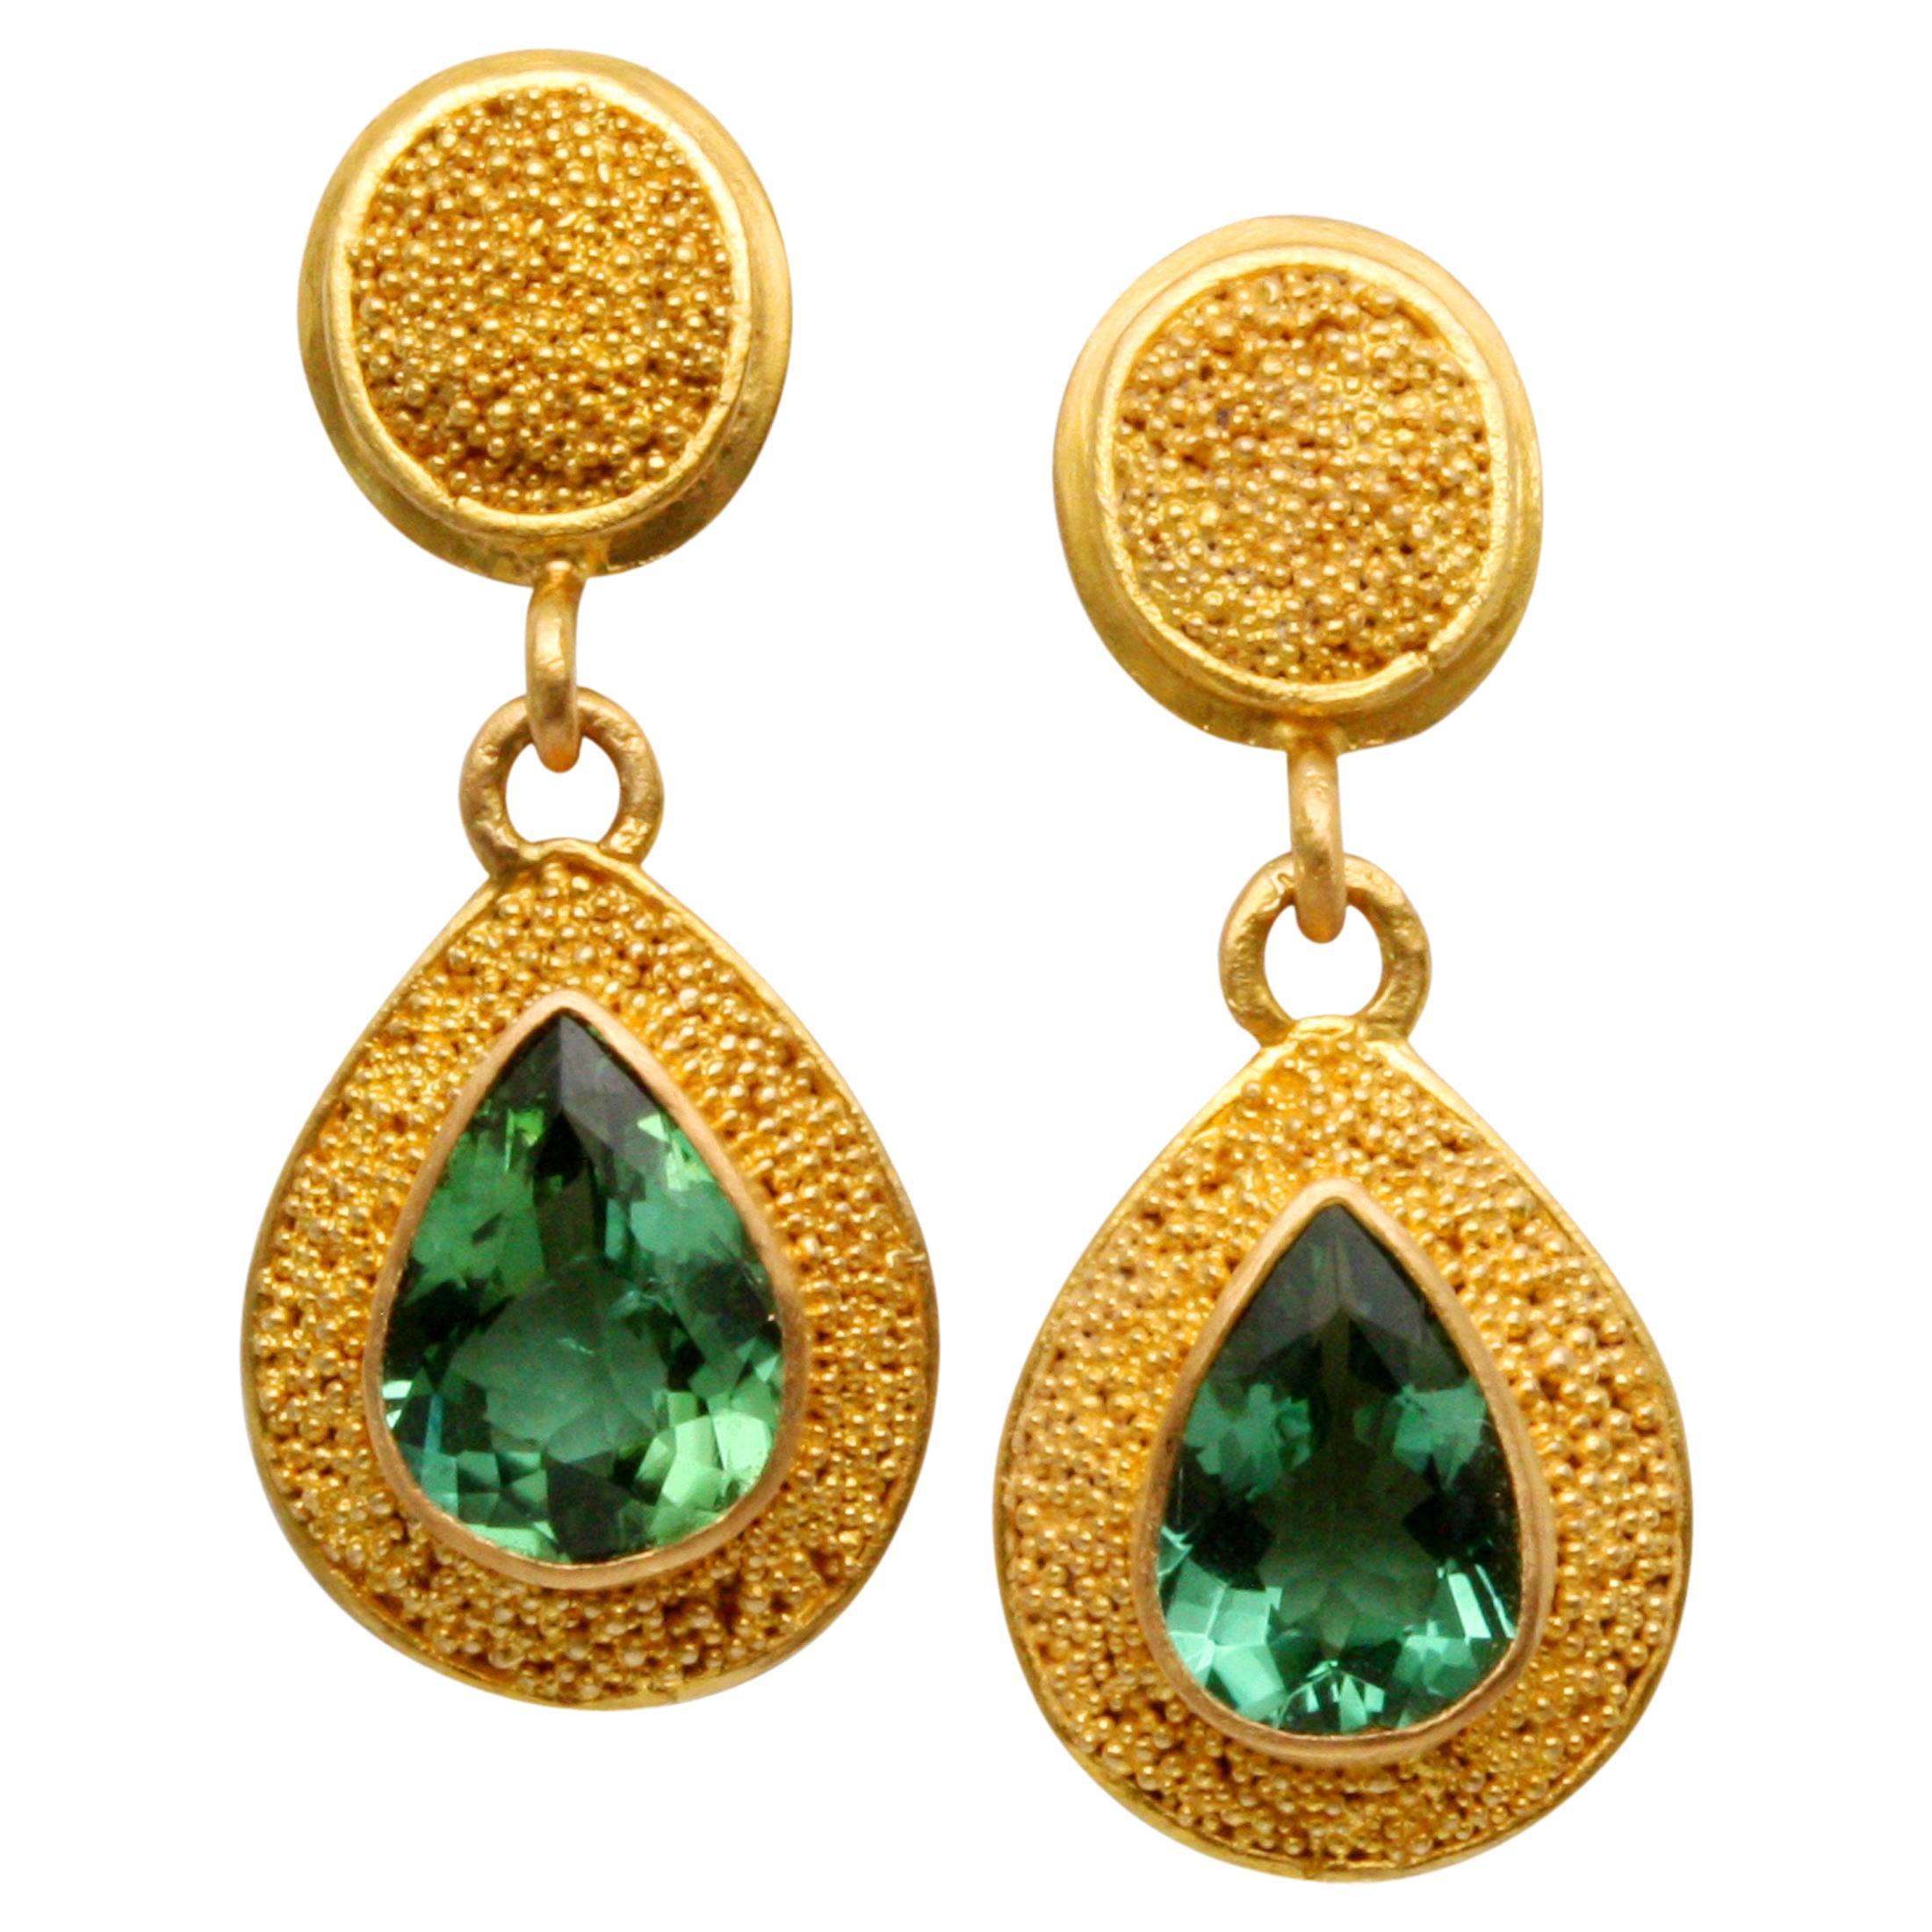 Steven Battelle 1.4 Carats Green Tourmaline 22K Gold Granulated Post Earrings